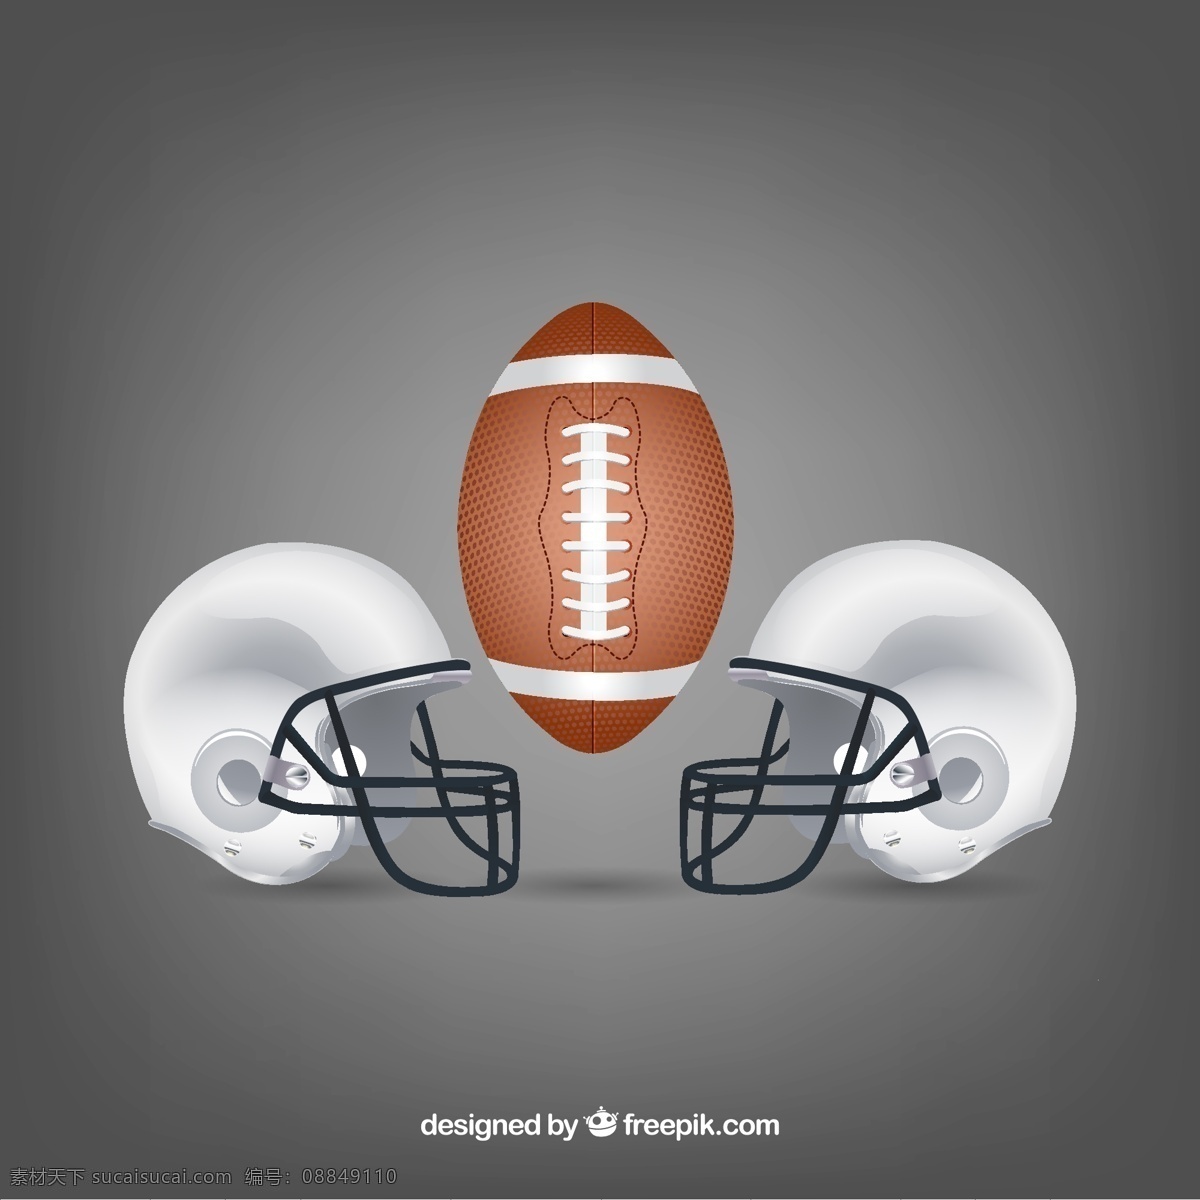 美式 橄榄球 用球 头盔 矢量 创意 灰色